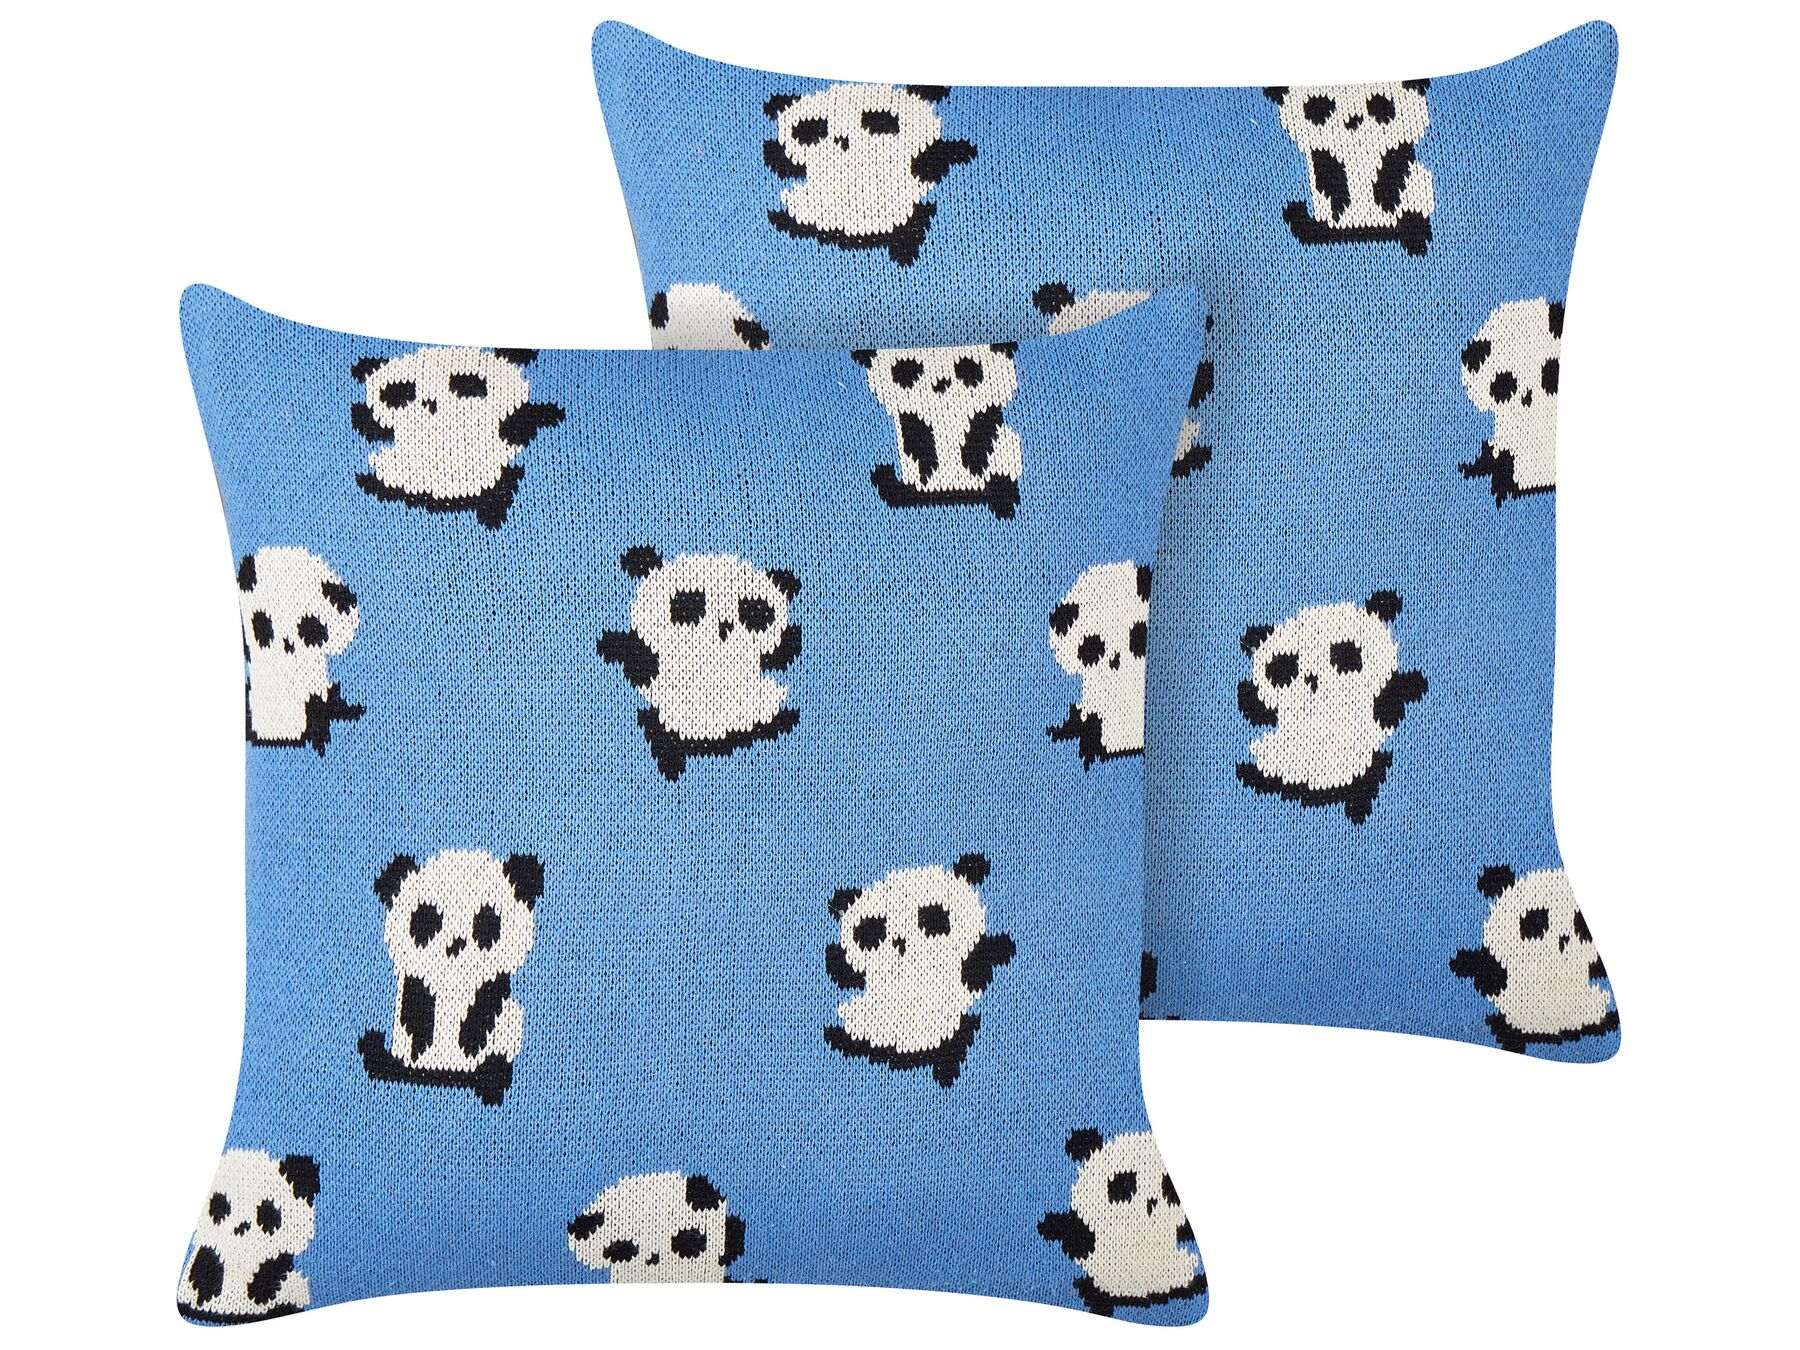 Conjunto 2 almofadas decorativas em algodão azul com padrão de pandas 45 x 45 cm TALOKAN_905430